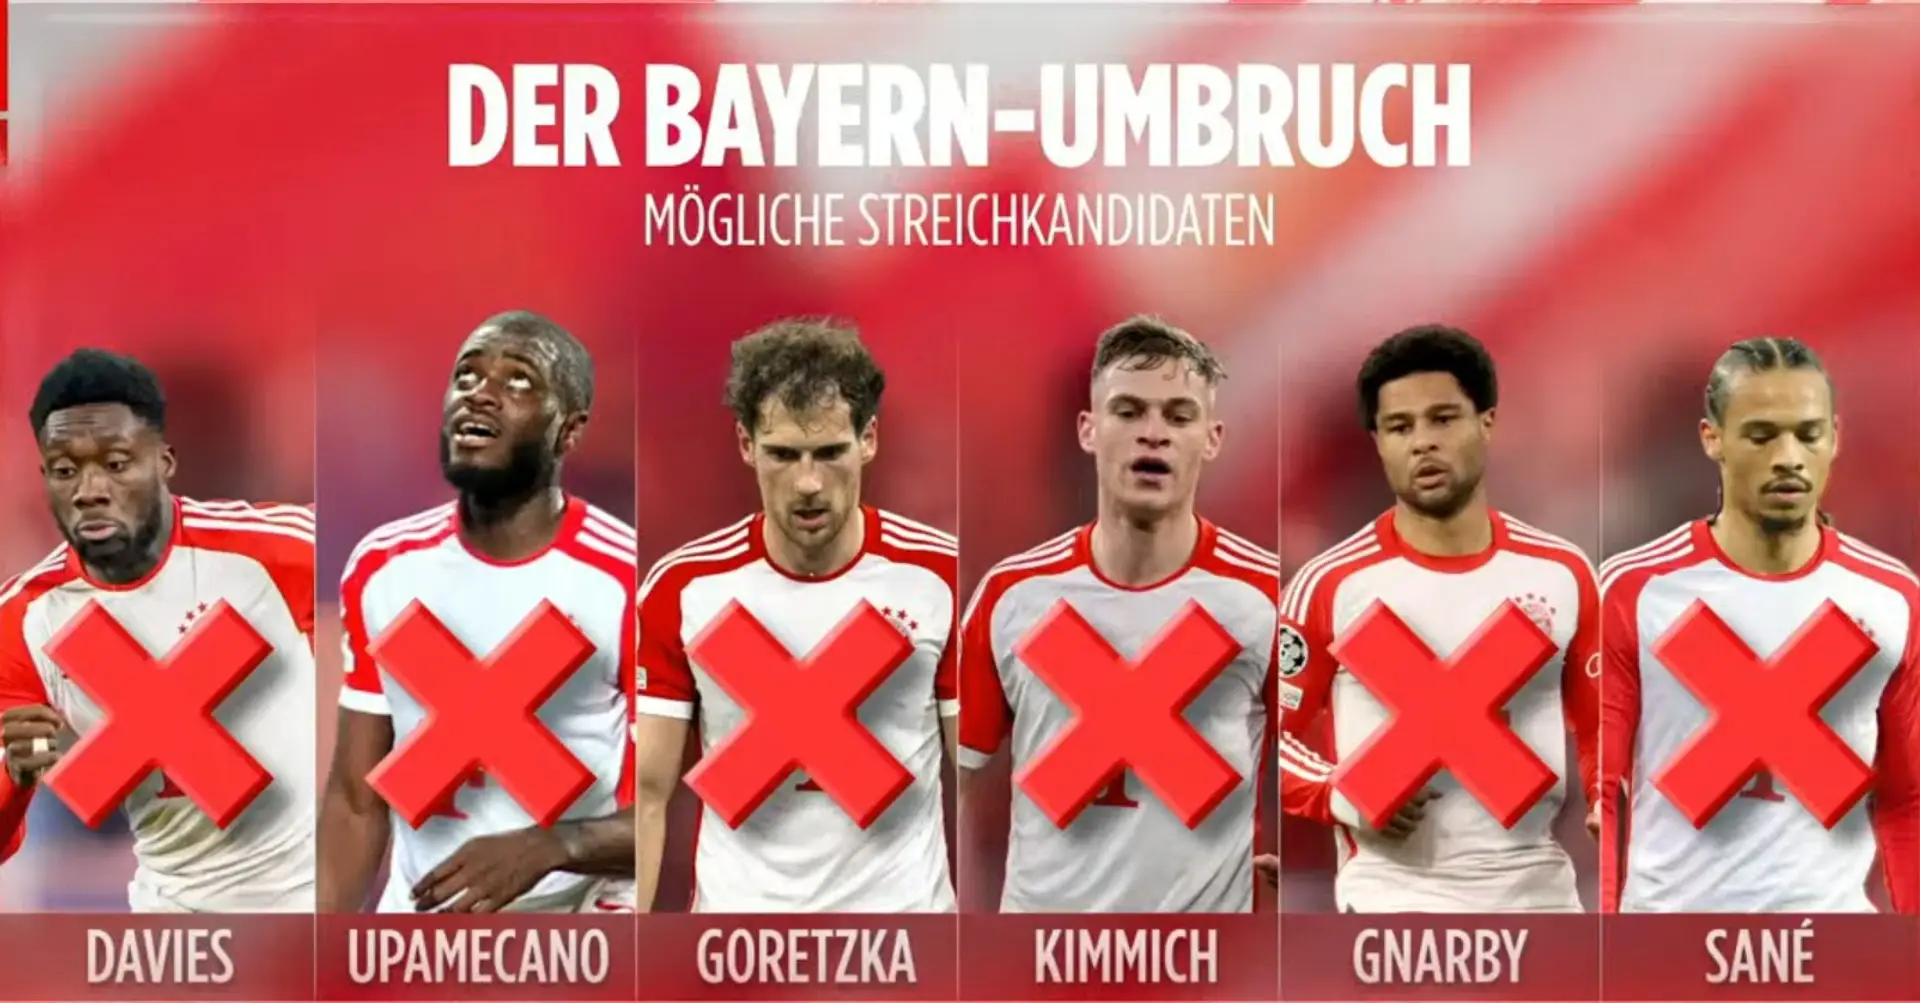 Mögliche Verkaufskandidaten für den Kaderumbau des FC Bayern und ihre Marktwerte